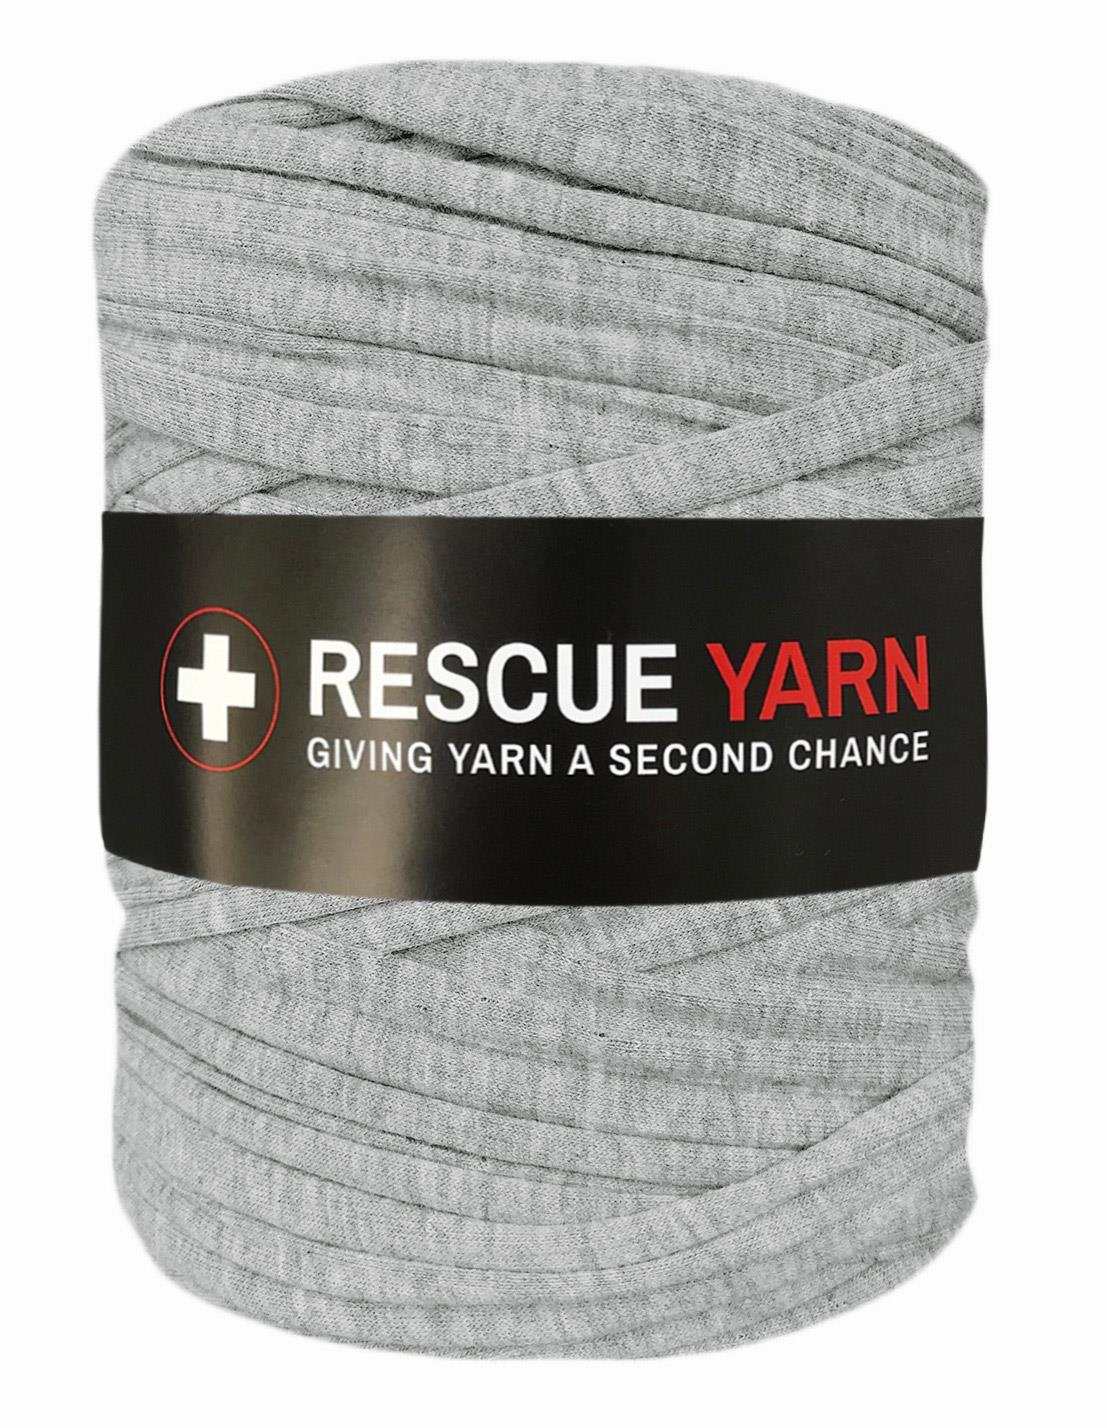 Grey t-shirt yarn by Rescue Yarn (100-120m)